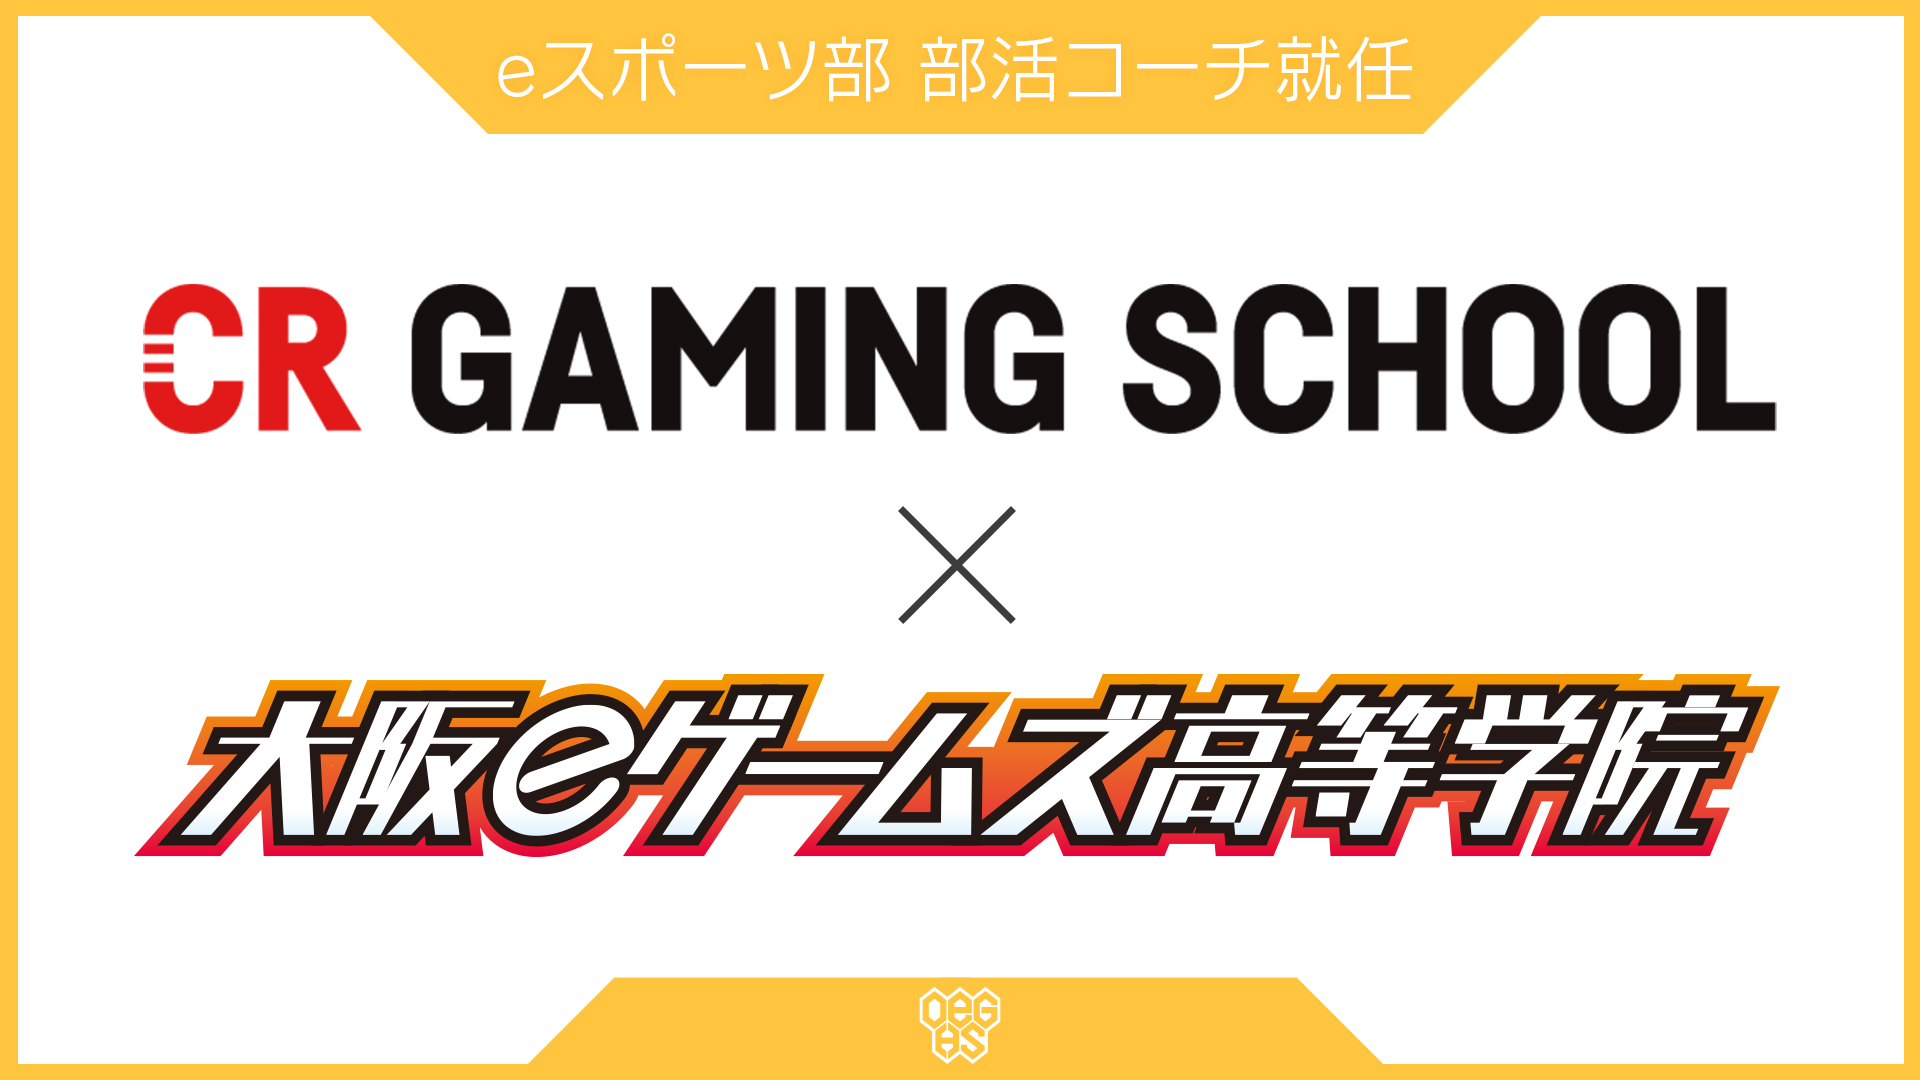 大阪eゲームズ高等学院、eスポーツの部活動「プロ育成コース」でCR Gaming School認定コーチによる部活指導をスタート画像1